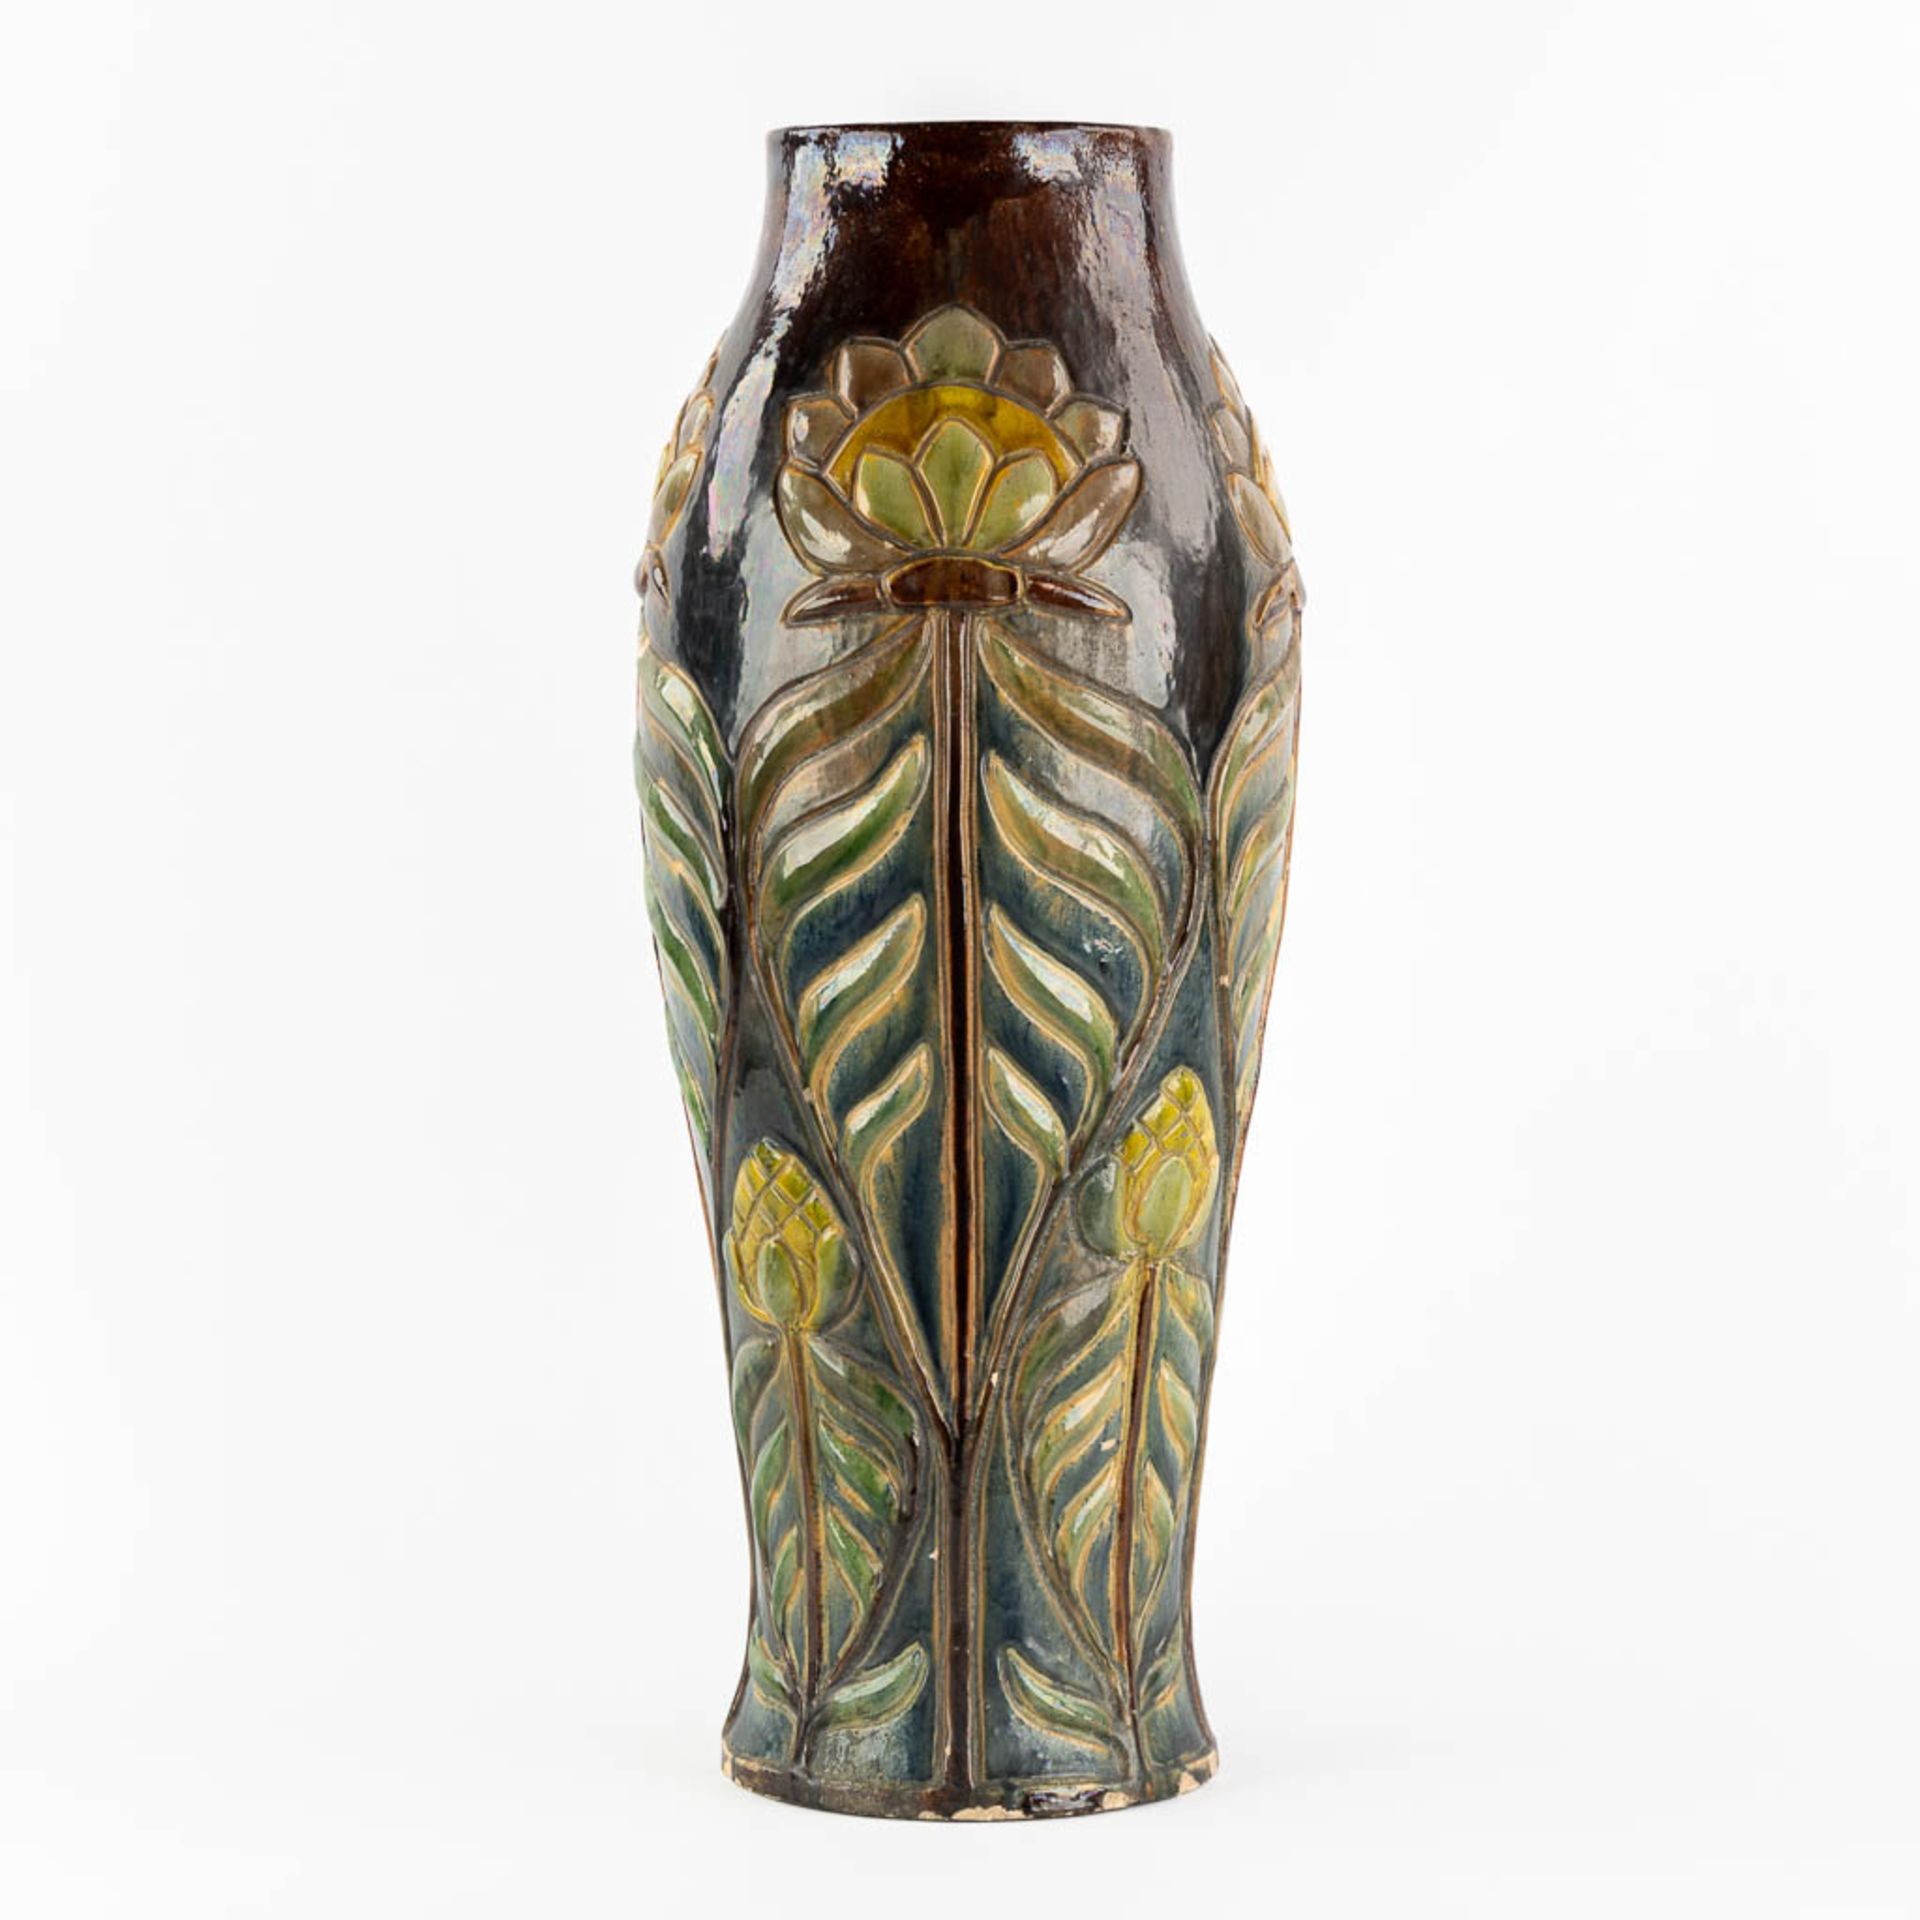 Flemish Earthenware, a large vase, Art Nouveau. (H:61,5 x D:22 cm) - Image 5 of 11